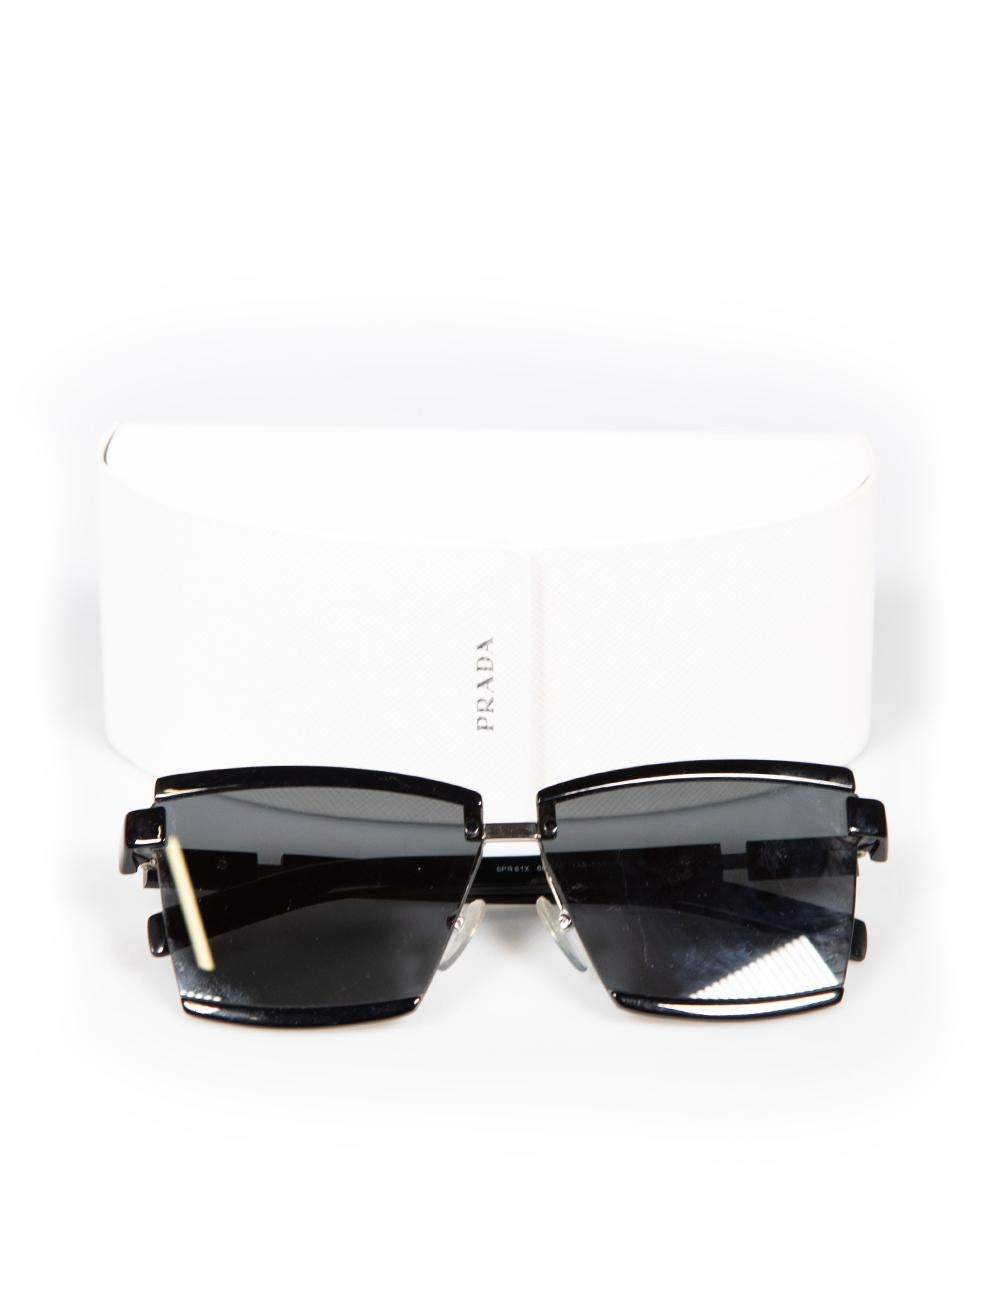 Prada Black SPR61X Square Frame Sunglasses For Sale 1